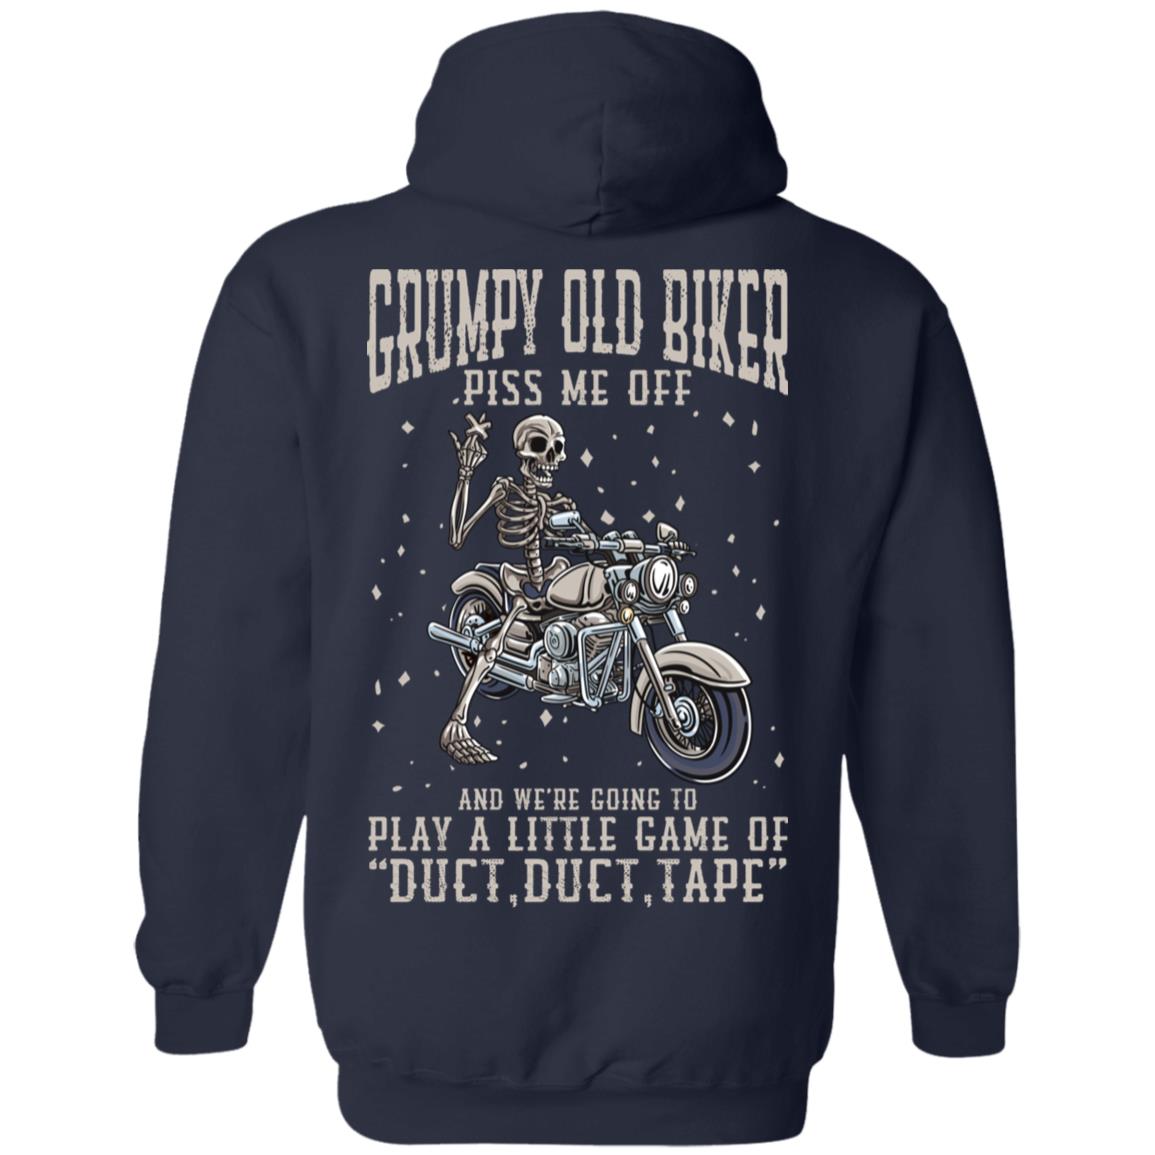 Grumpy Old Biker - Piss Me Off - Funny Biker Apparel